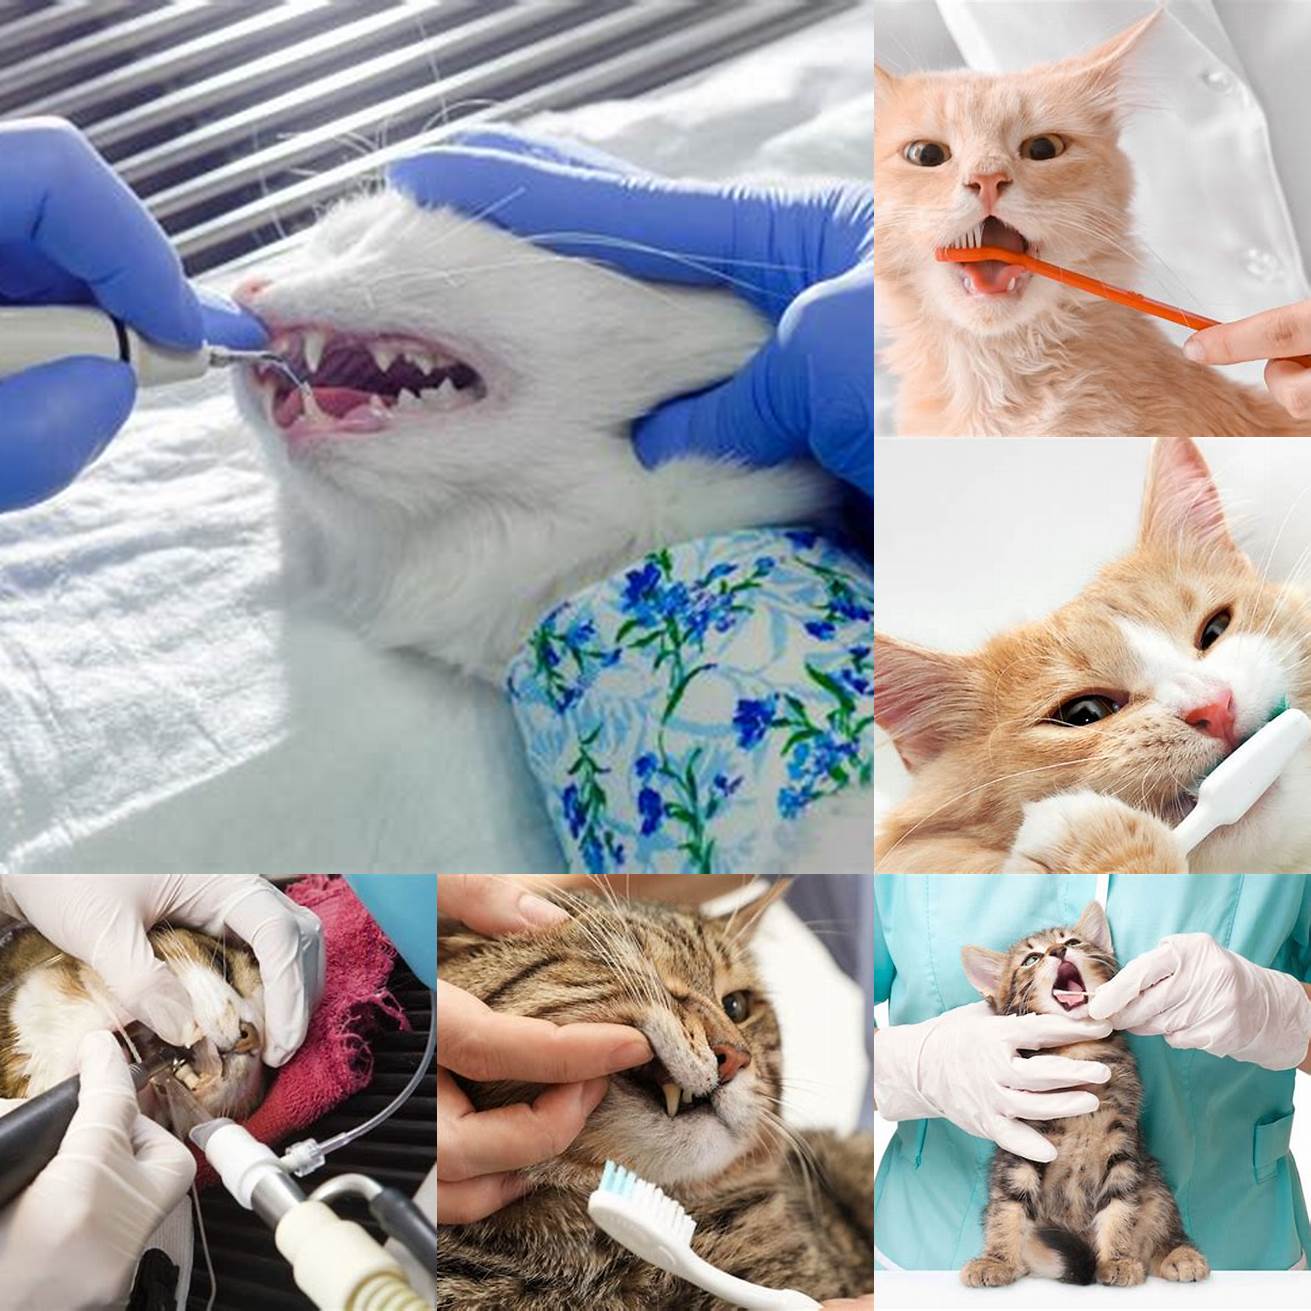 Cat receiving dental treatment